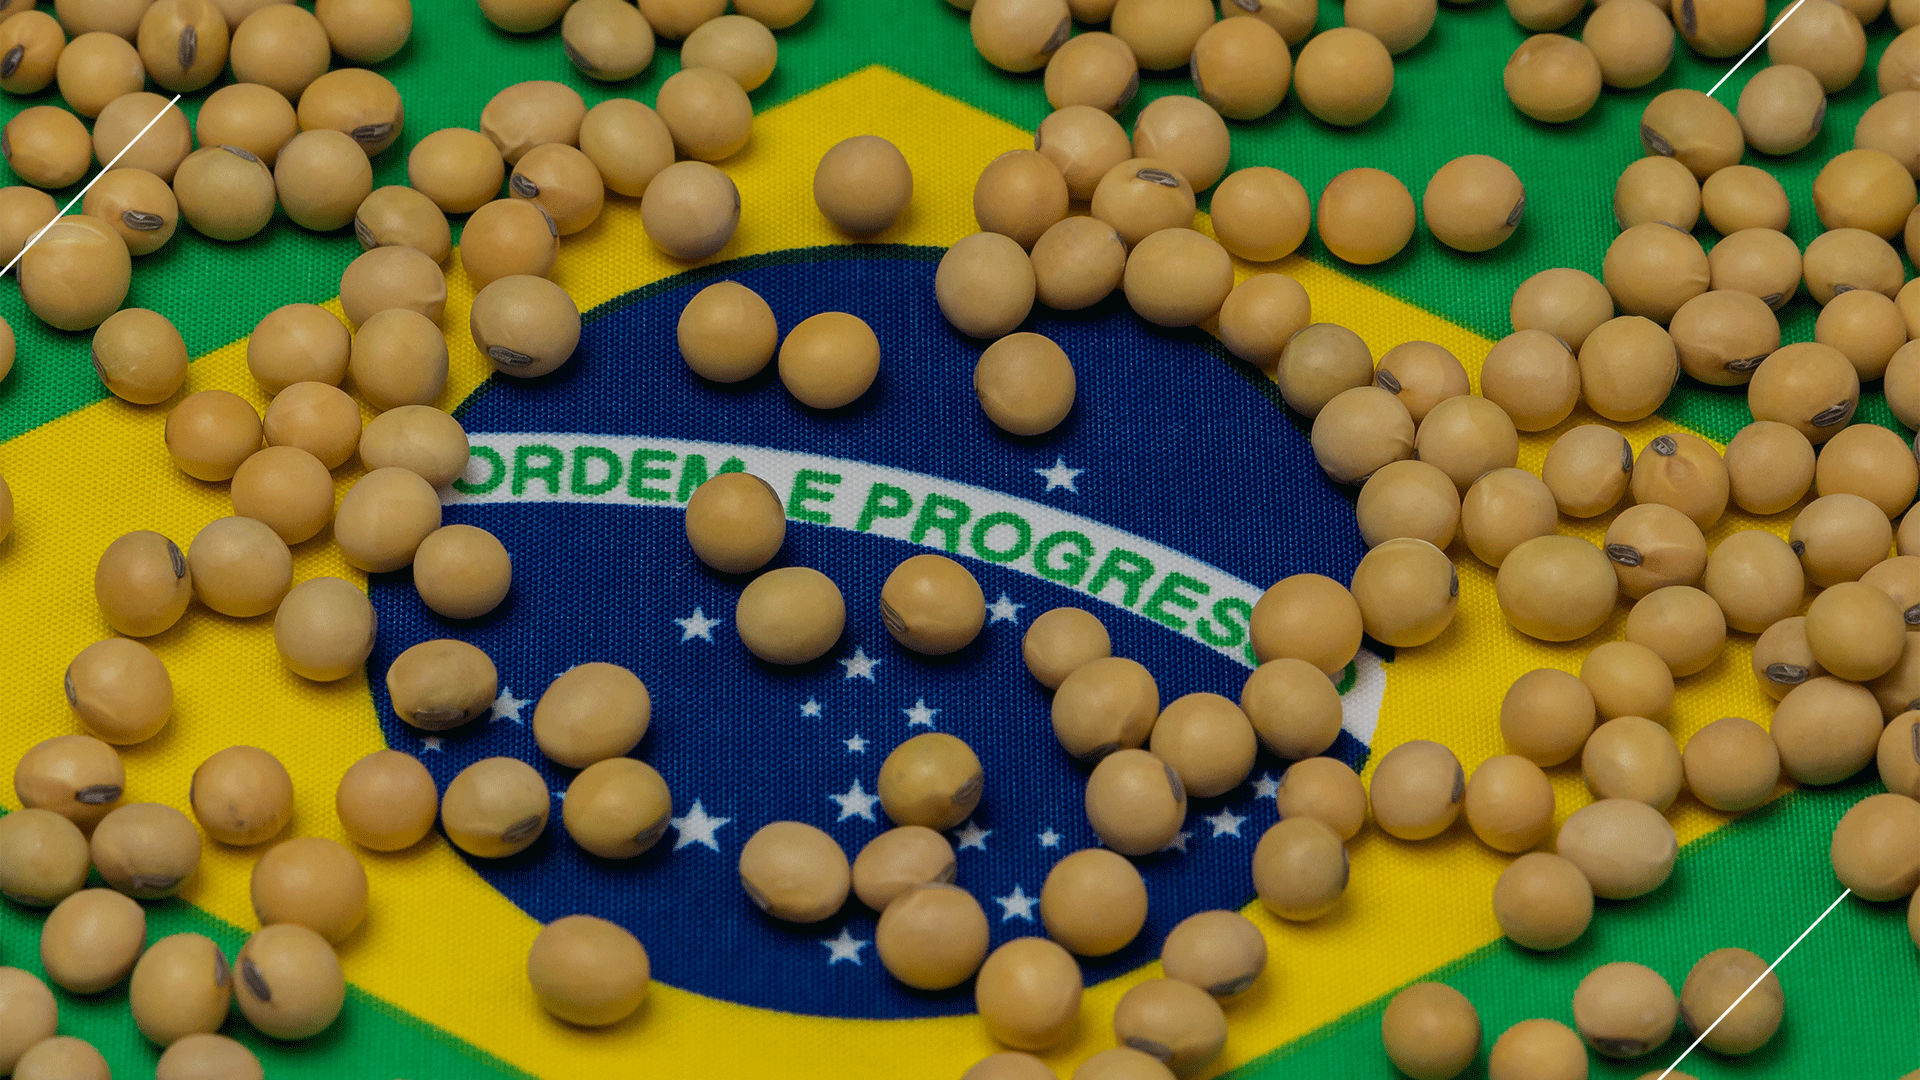 Colhendo o que plantamos: O Brasil e sua influência global no preço dos grãos